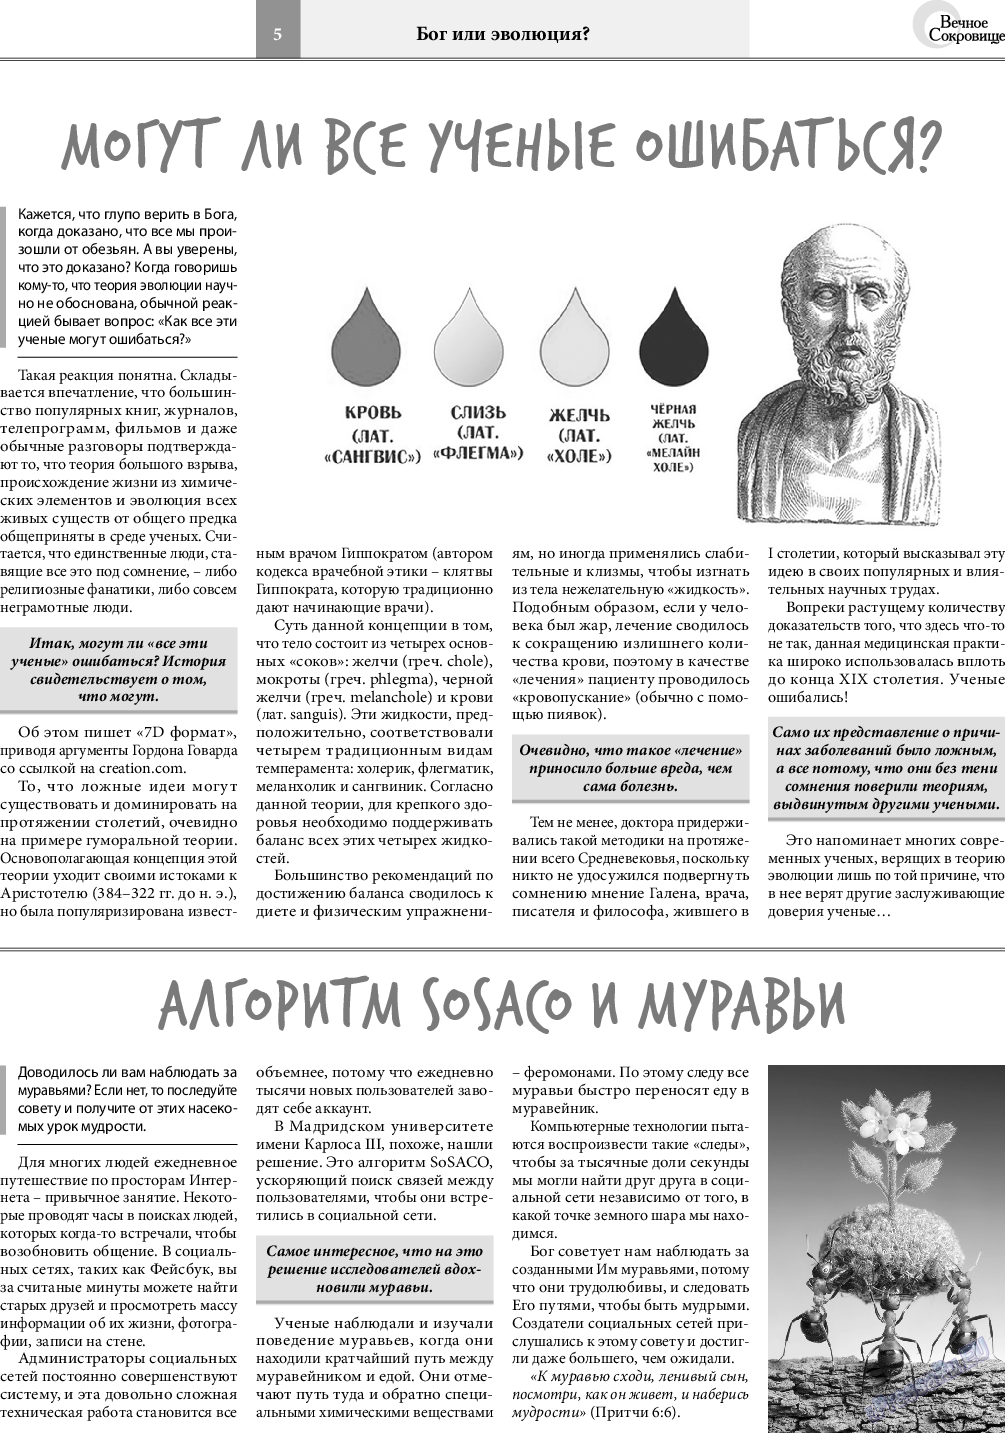 Вечное сокровище, газета. 2020 №3 стр.5